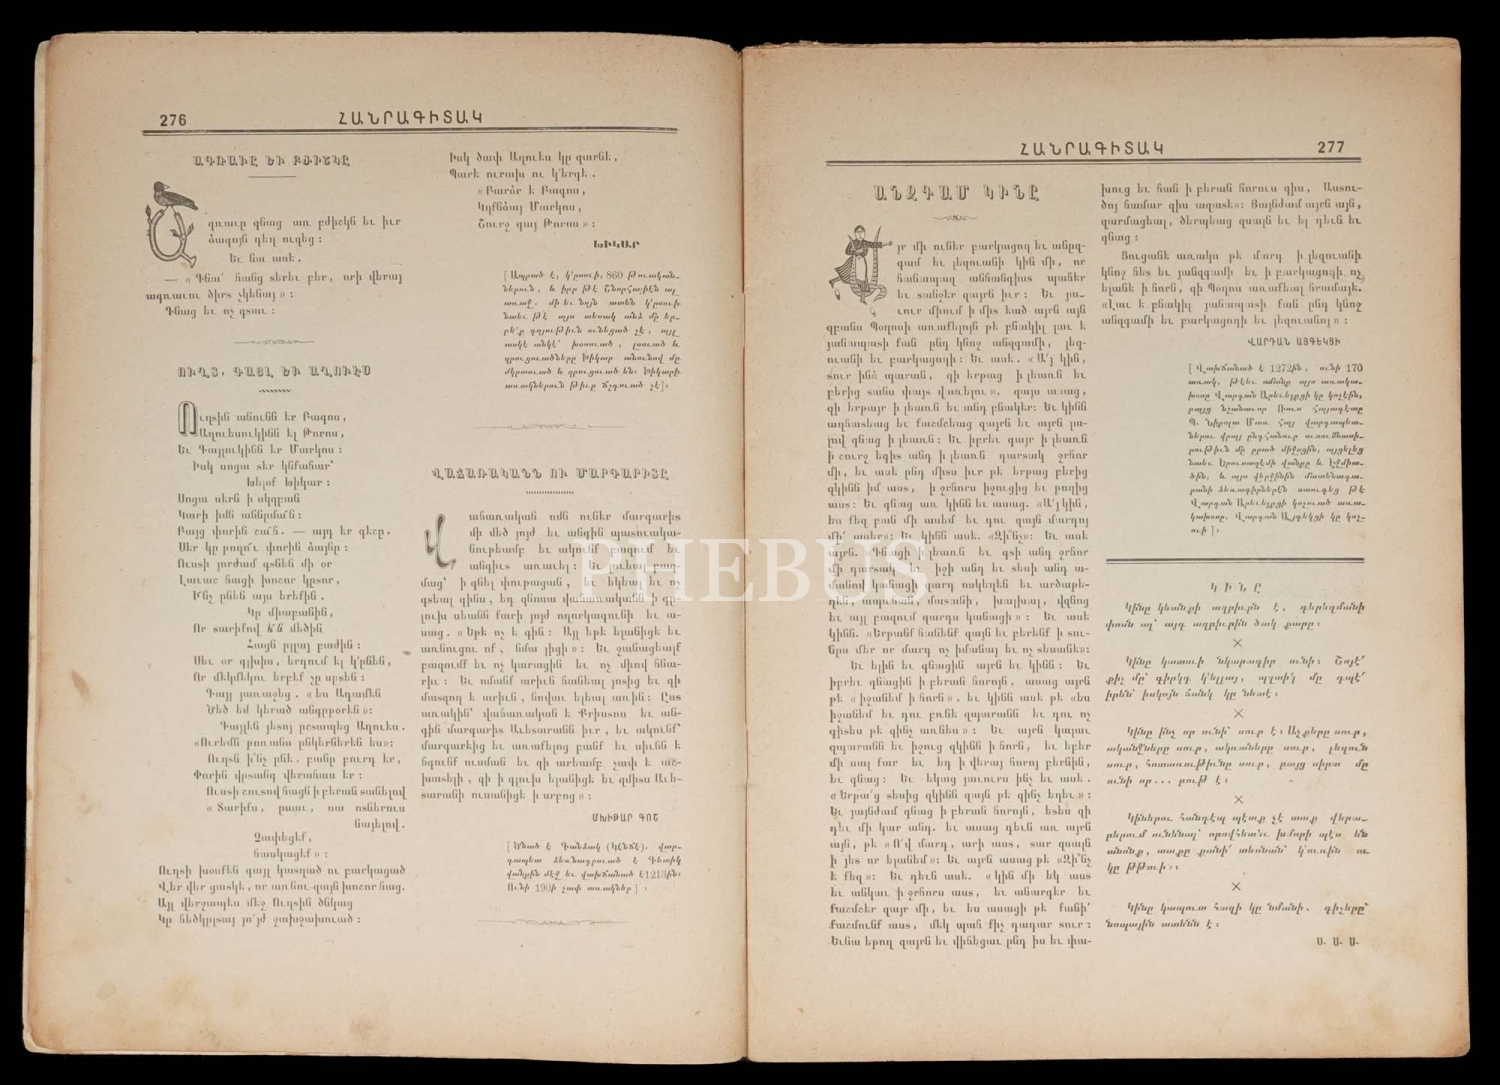 HANRAKIDAG, Müdür ve Sermuharrir: Vahan Papazyan, 1907, A. Asaduryan Matbaası, 34 sayfa, 20x28 cm...